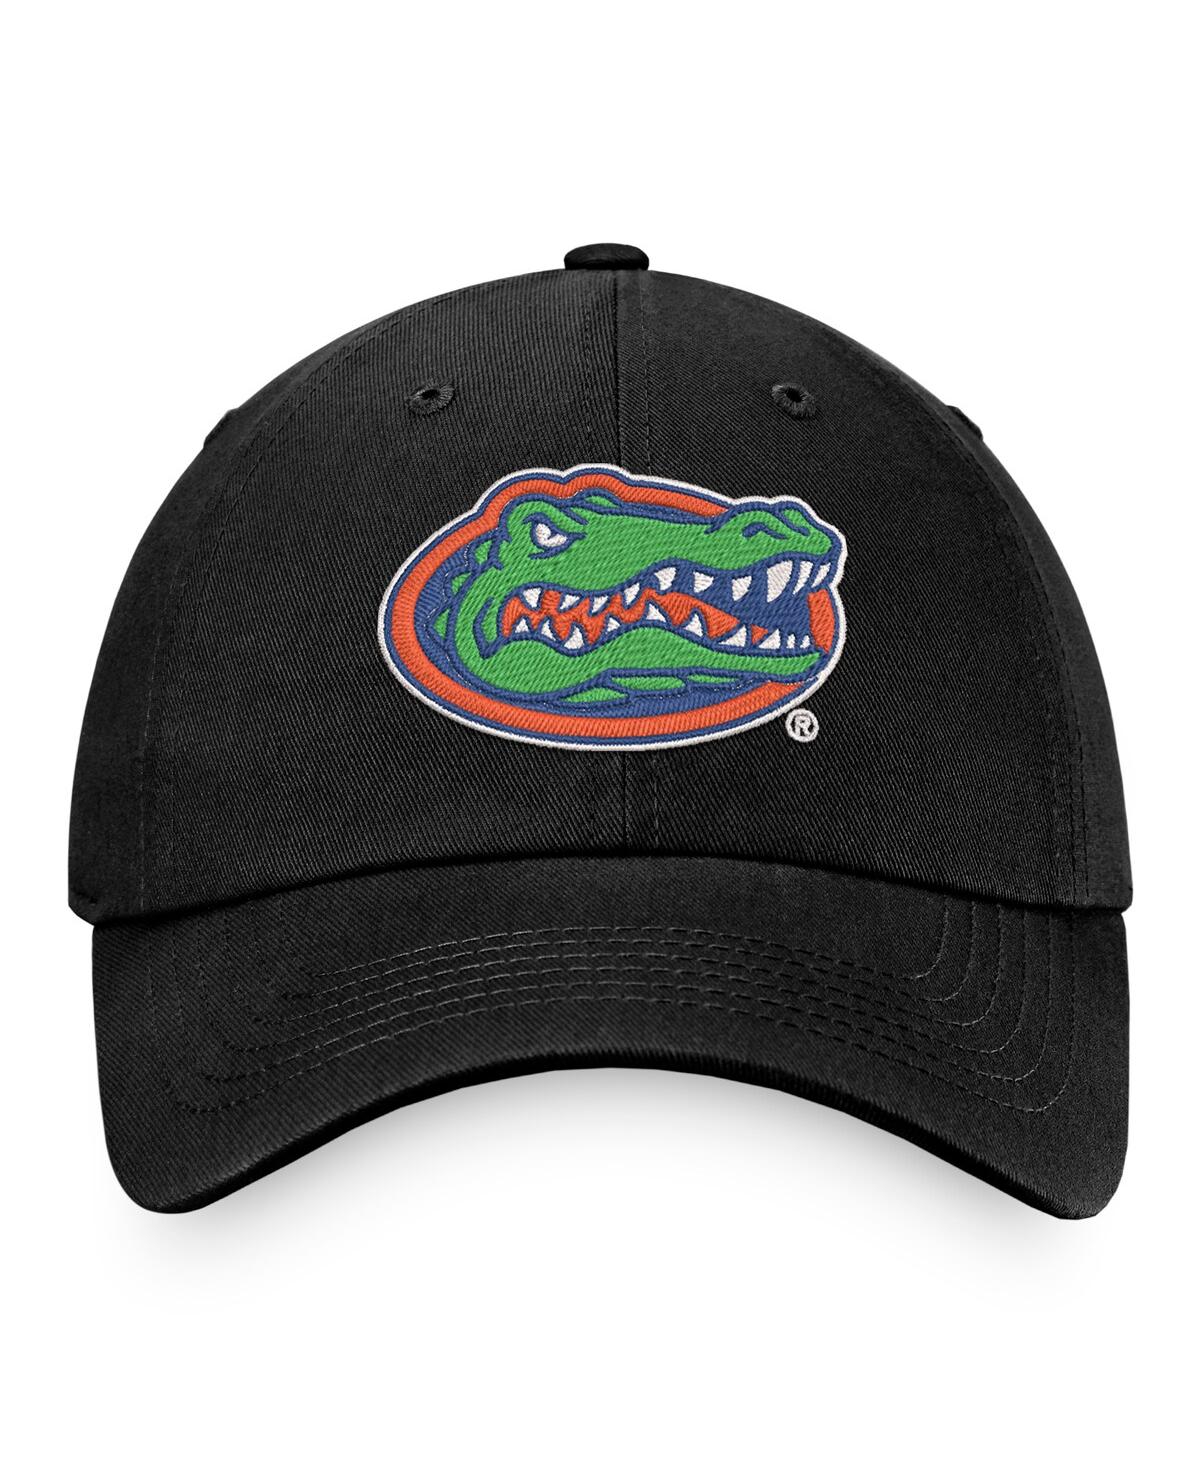 Shop Top Of The World Men's  Black Florida Gators Chase Adjustable Hat